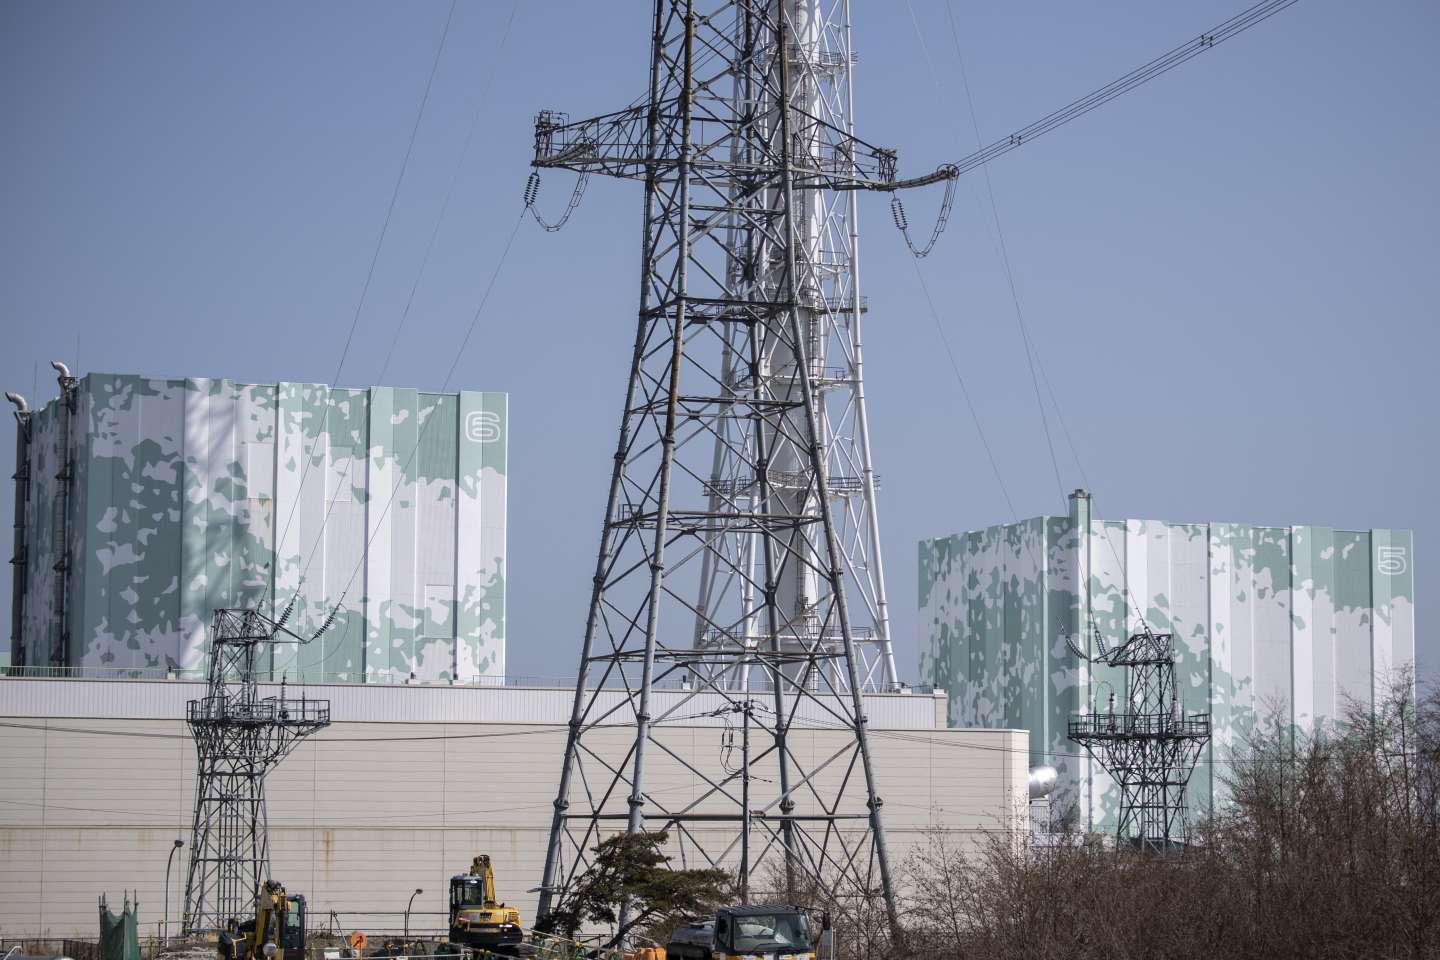 Les fortes chaleurs et des contraintes de production poussent le Japon à économiser son électricité